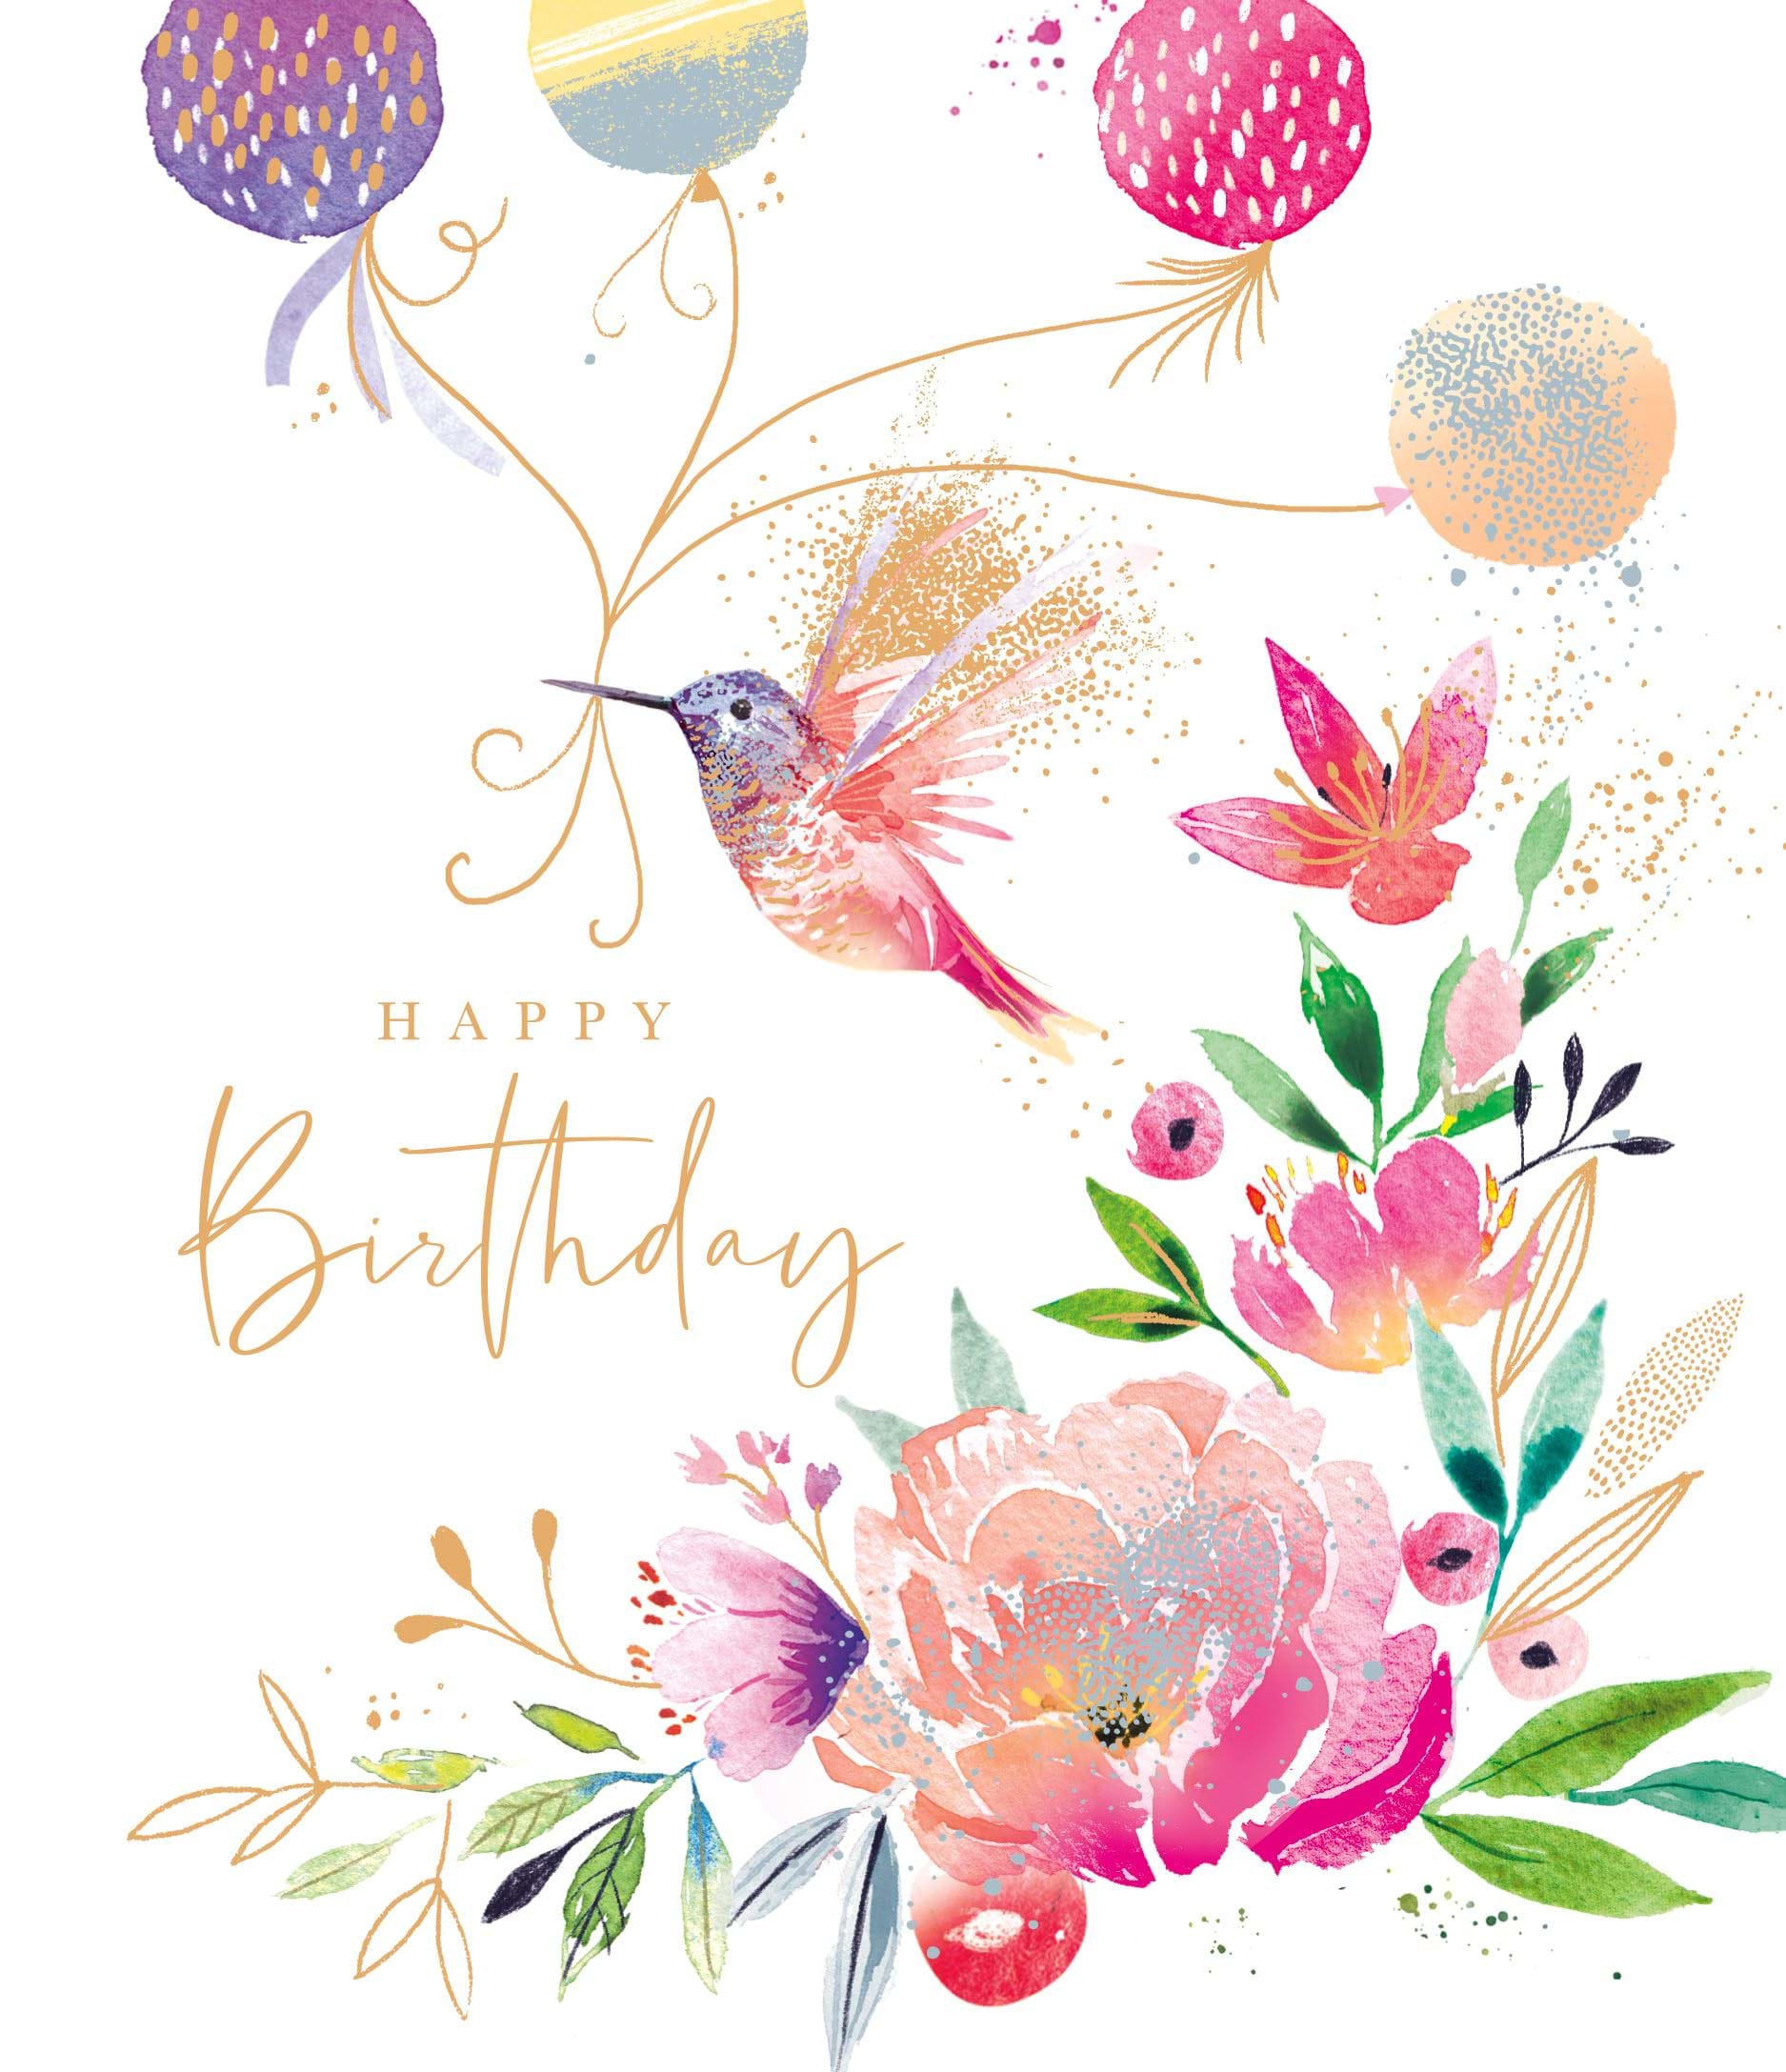 Hummingbird Birthday Card